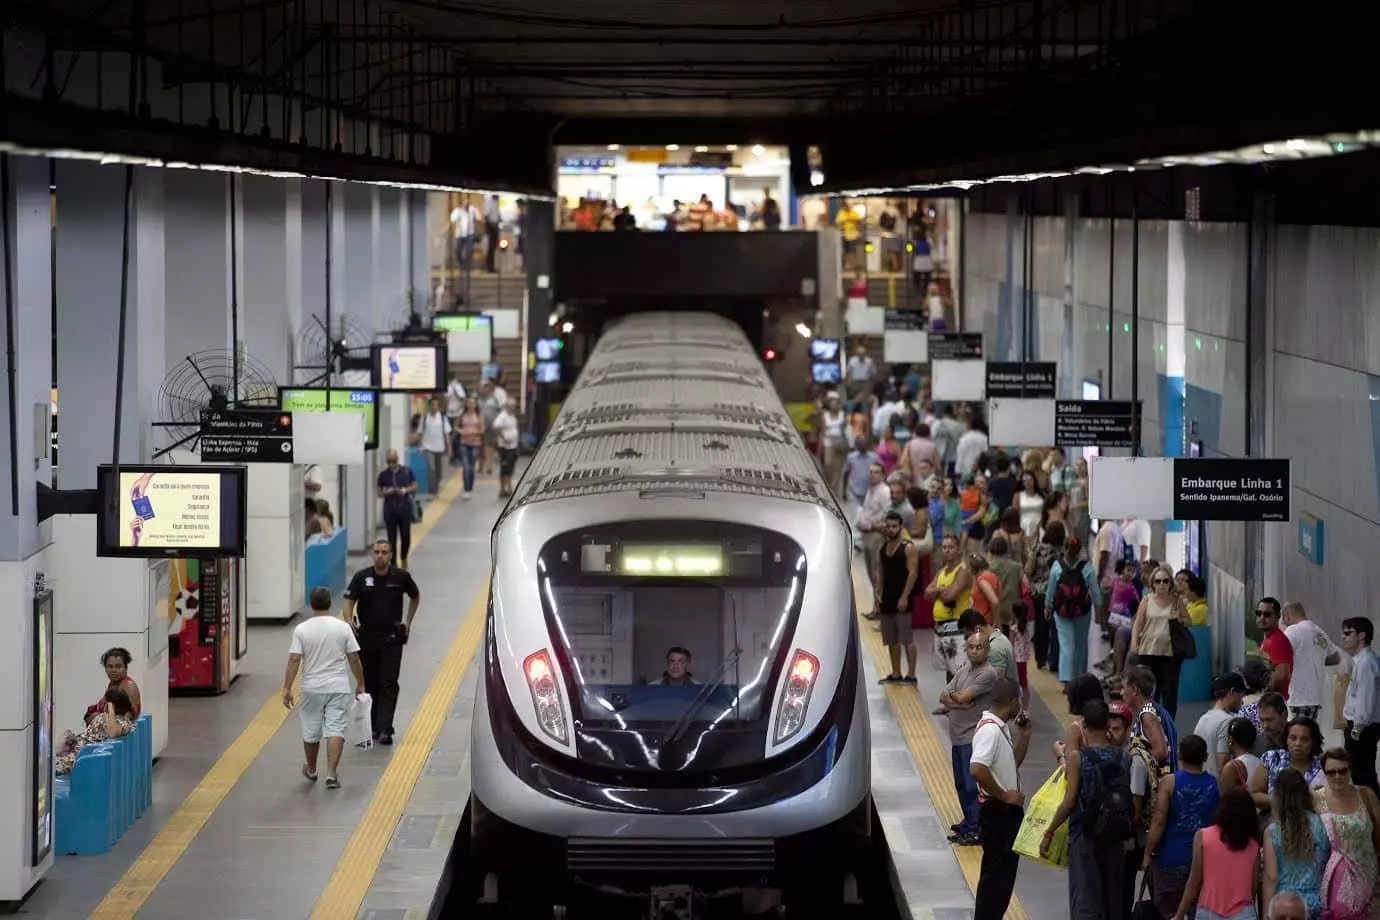 Expansão do metrô até São Gonçalo: licitação em dezembro